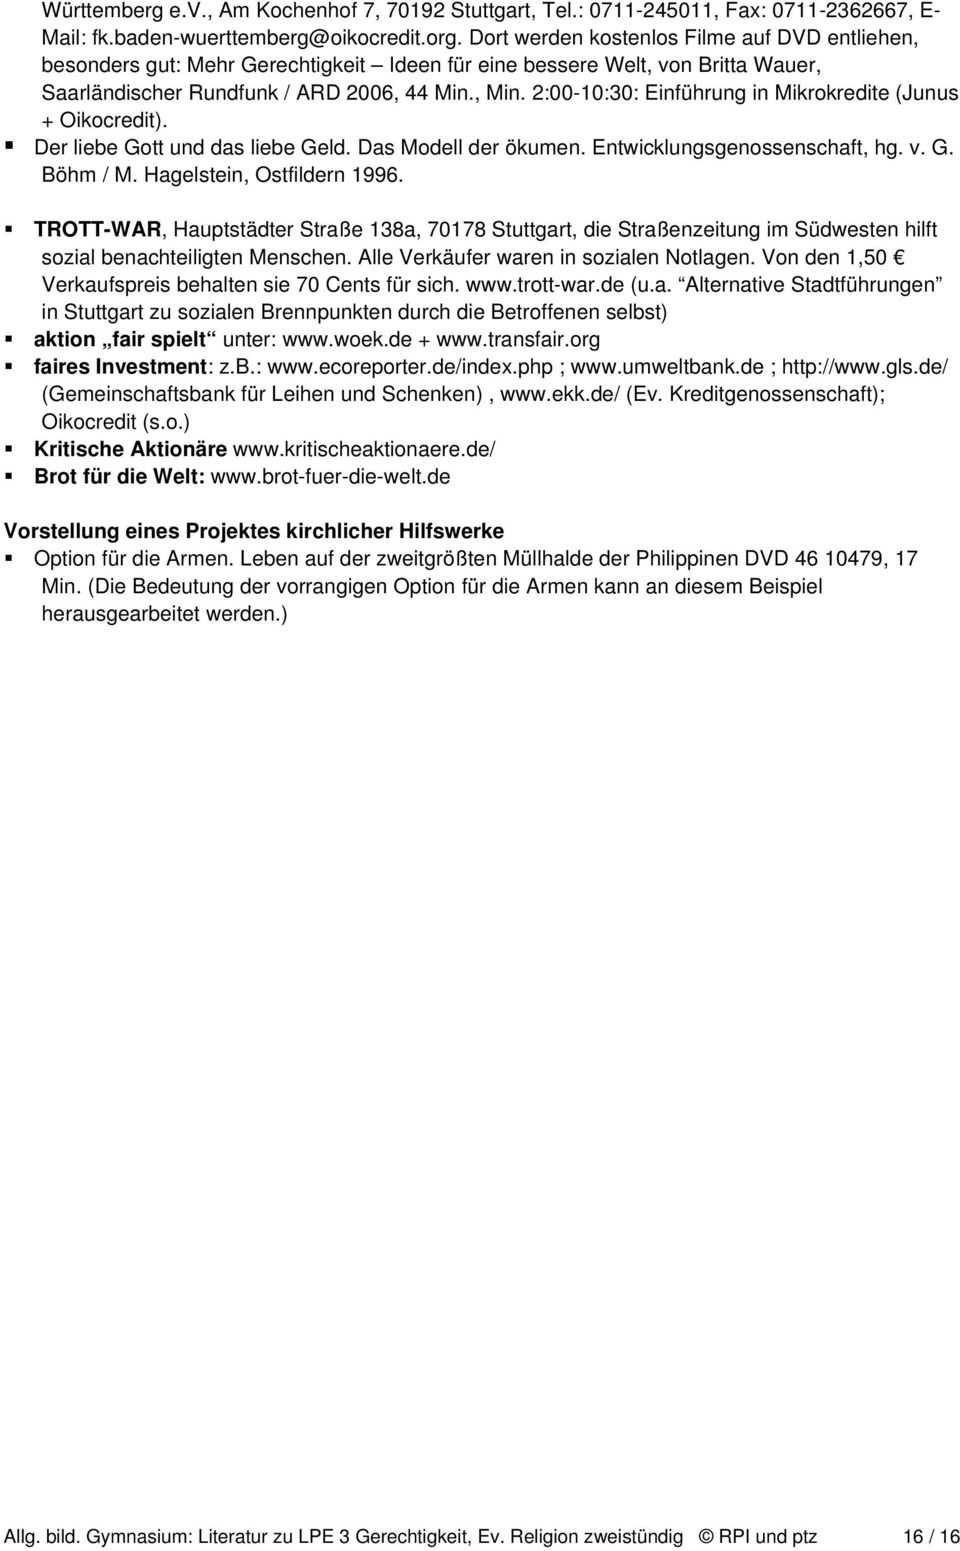 2:00-10:30: Einführung in Mikrokredite (Junus + Oikocredit). Der liebe Gott und das liebe Geld. Das Modell der ökumen. Entwicklungsgenossenschaft, hg. v. G. Böhm / M. Hagelstein, Ostfildern 1996.